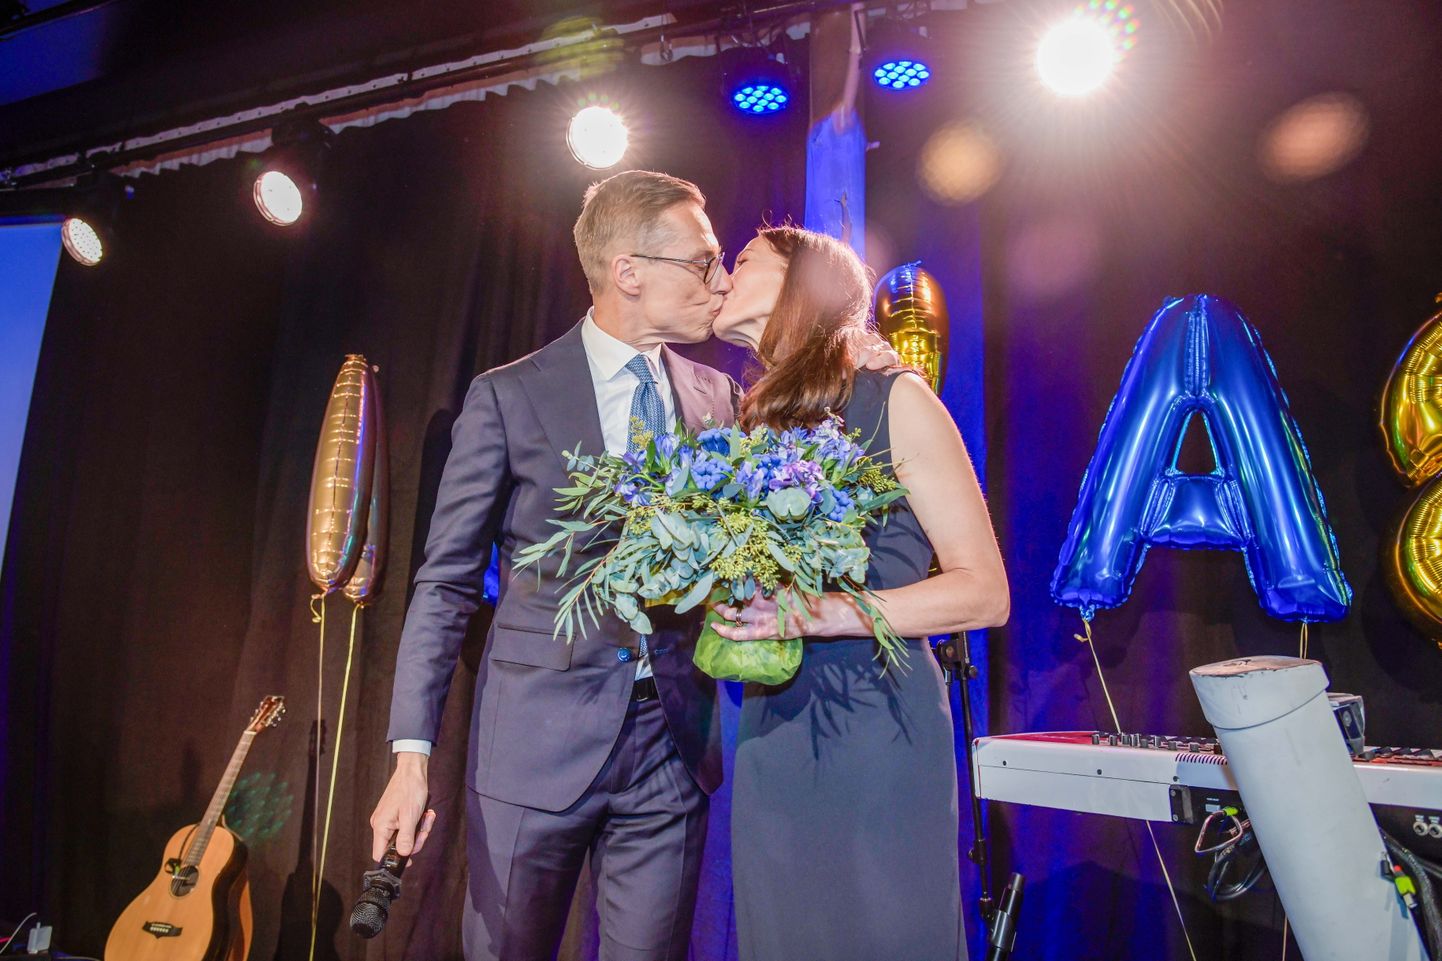 Soome presidendivalimised võitis Alexander Stubb, kelle ametiaeg algab 1. märtsil 2024. Pildil on näha Stubbi 11. veebruaril 2024 oma naist Suzanne Innes-Stubbi suudlemas.